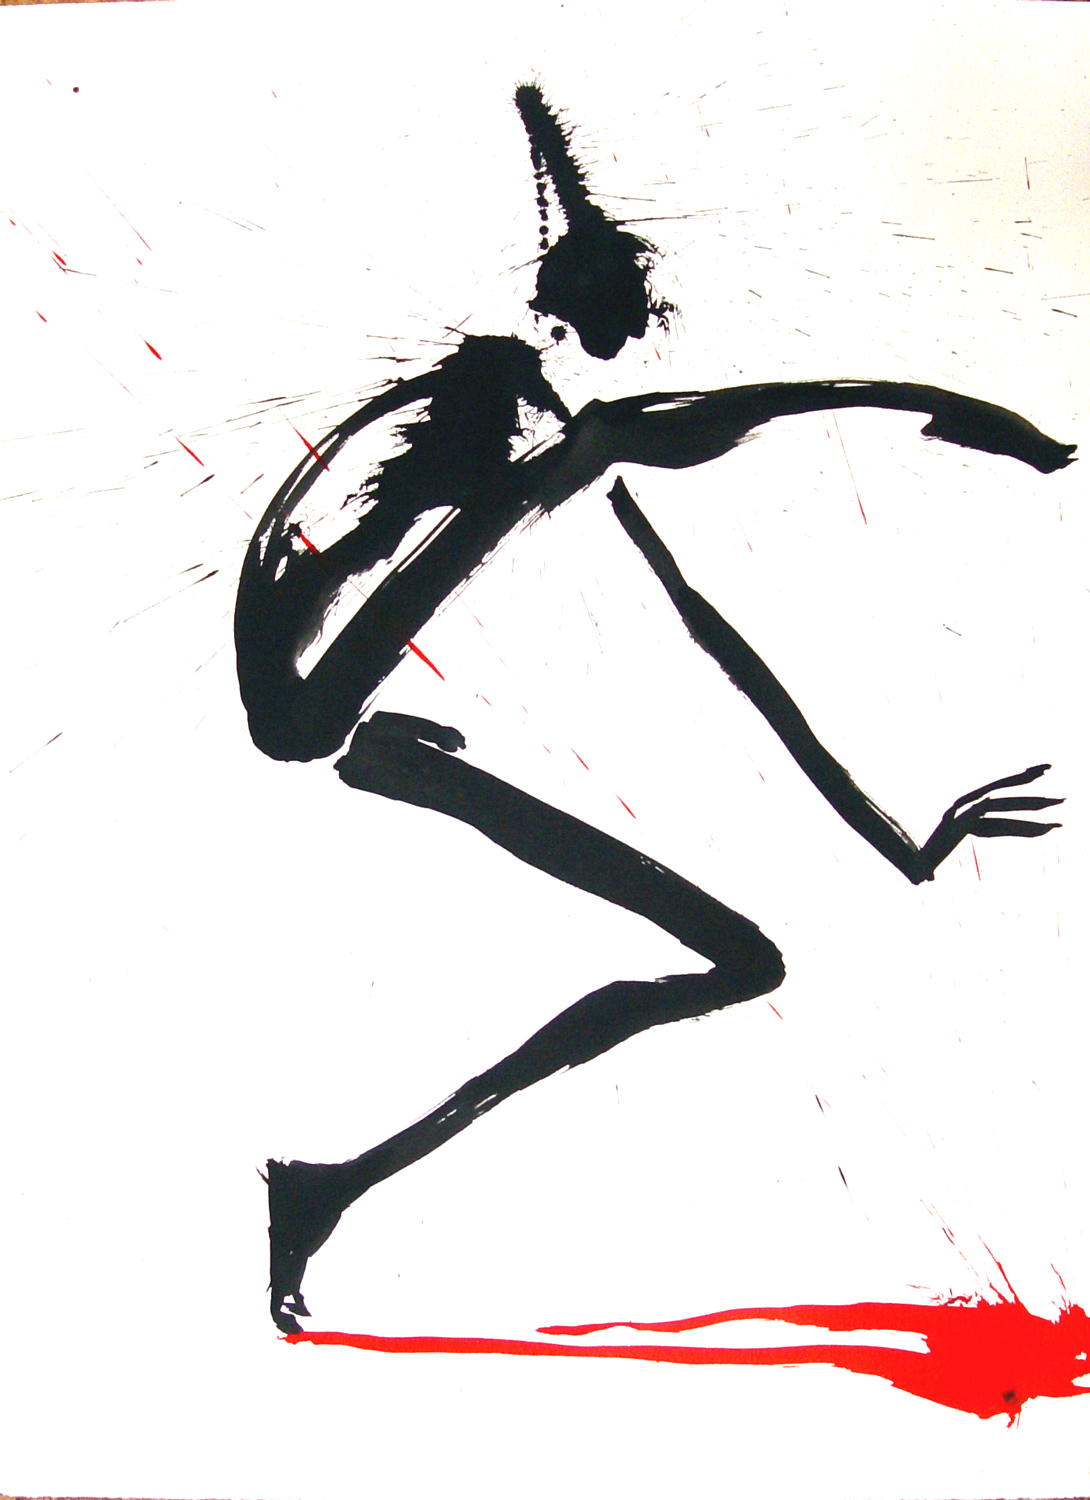 Zeichnung, 2004, Tusche, Bütten, 76 x 54 cm